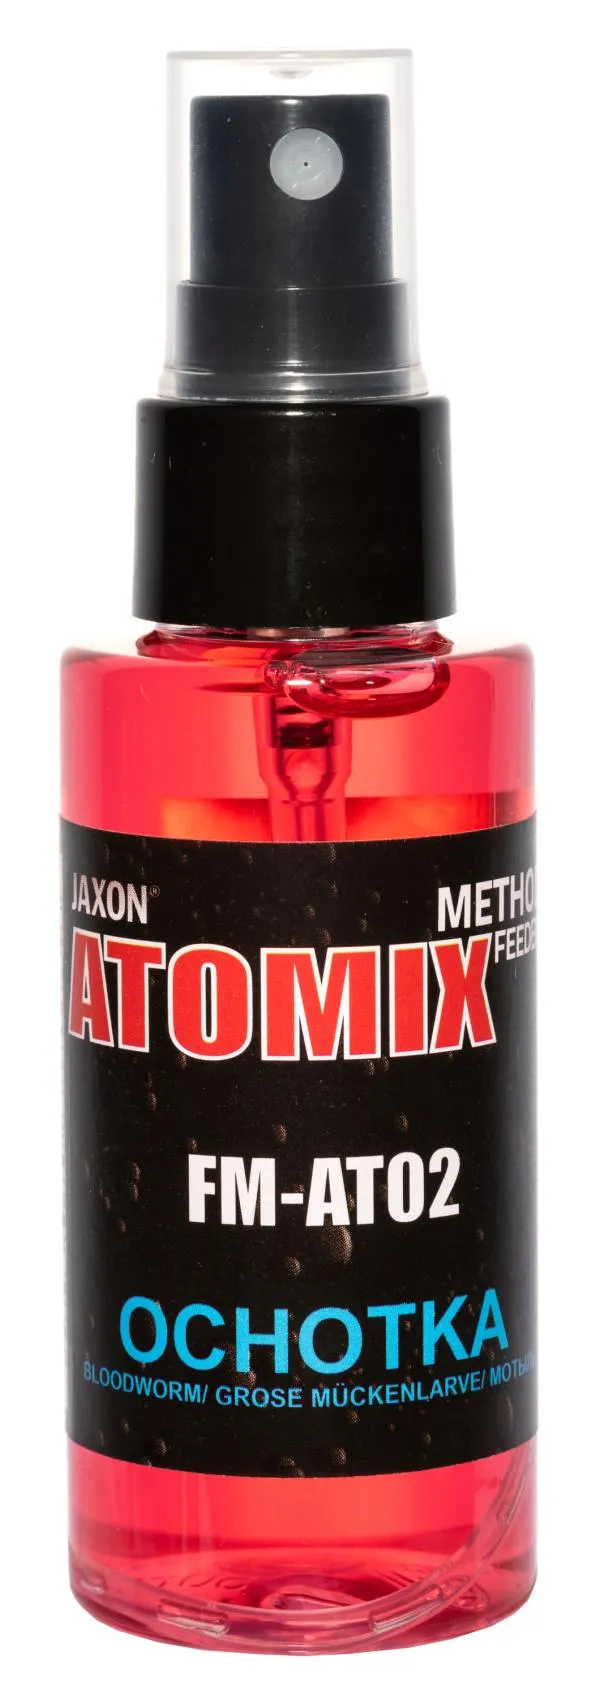 NextFish - Horgász webshop és horgászbolt - JAXON ATOMIX - BLOODWORM 50g aroma